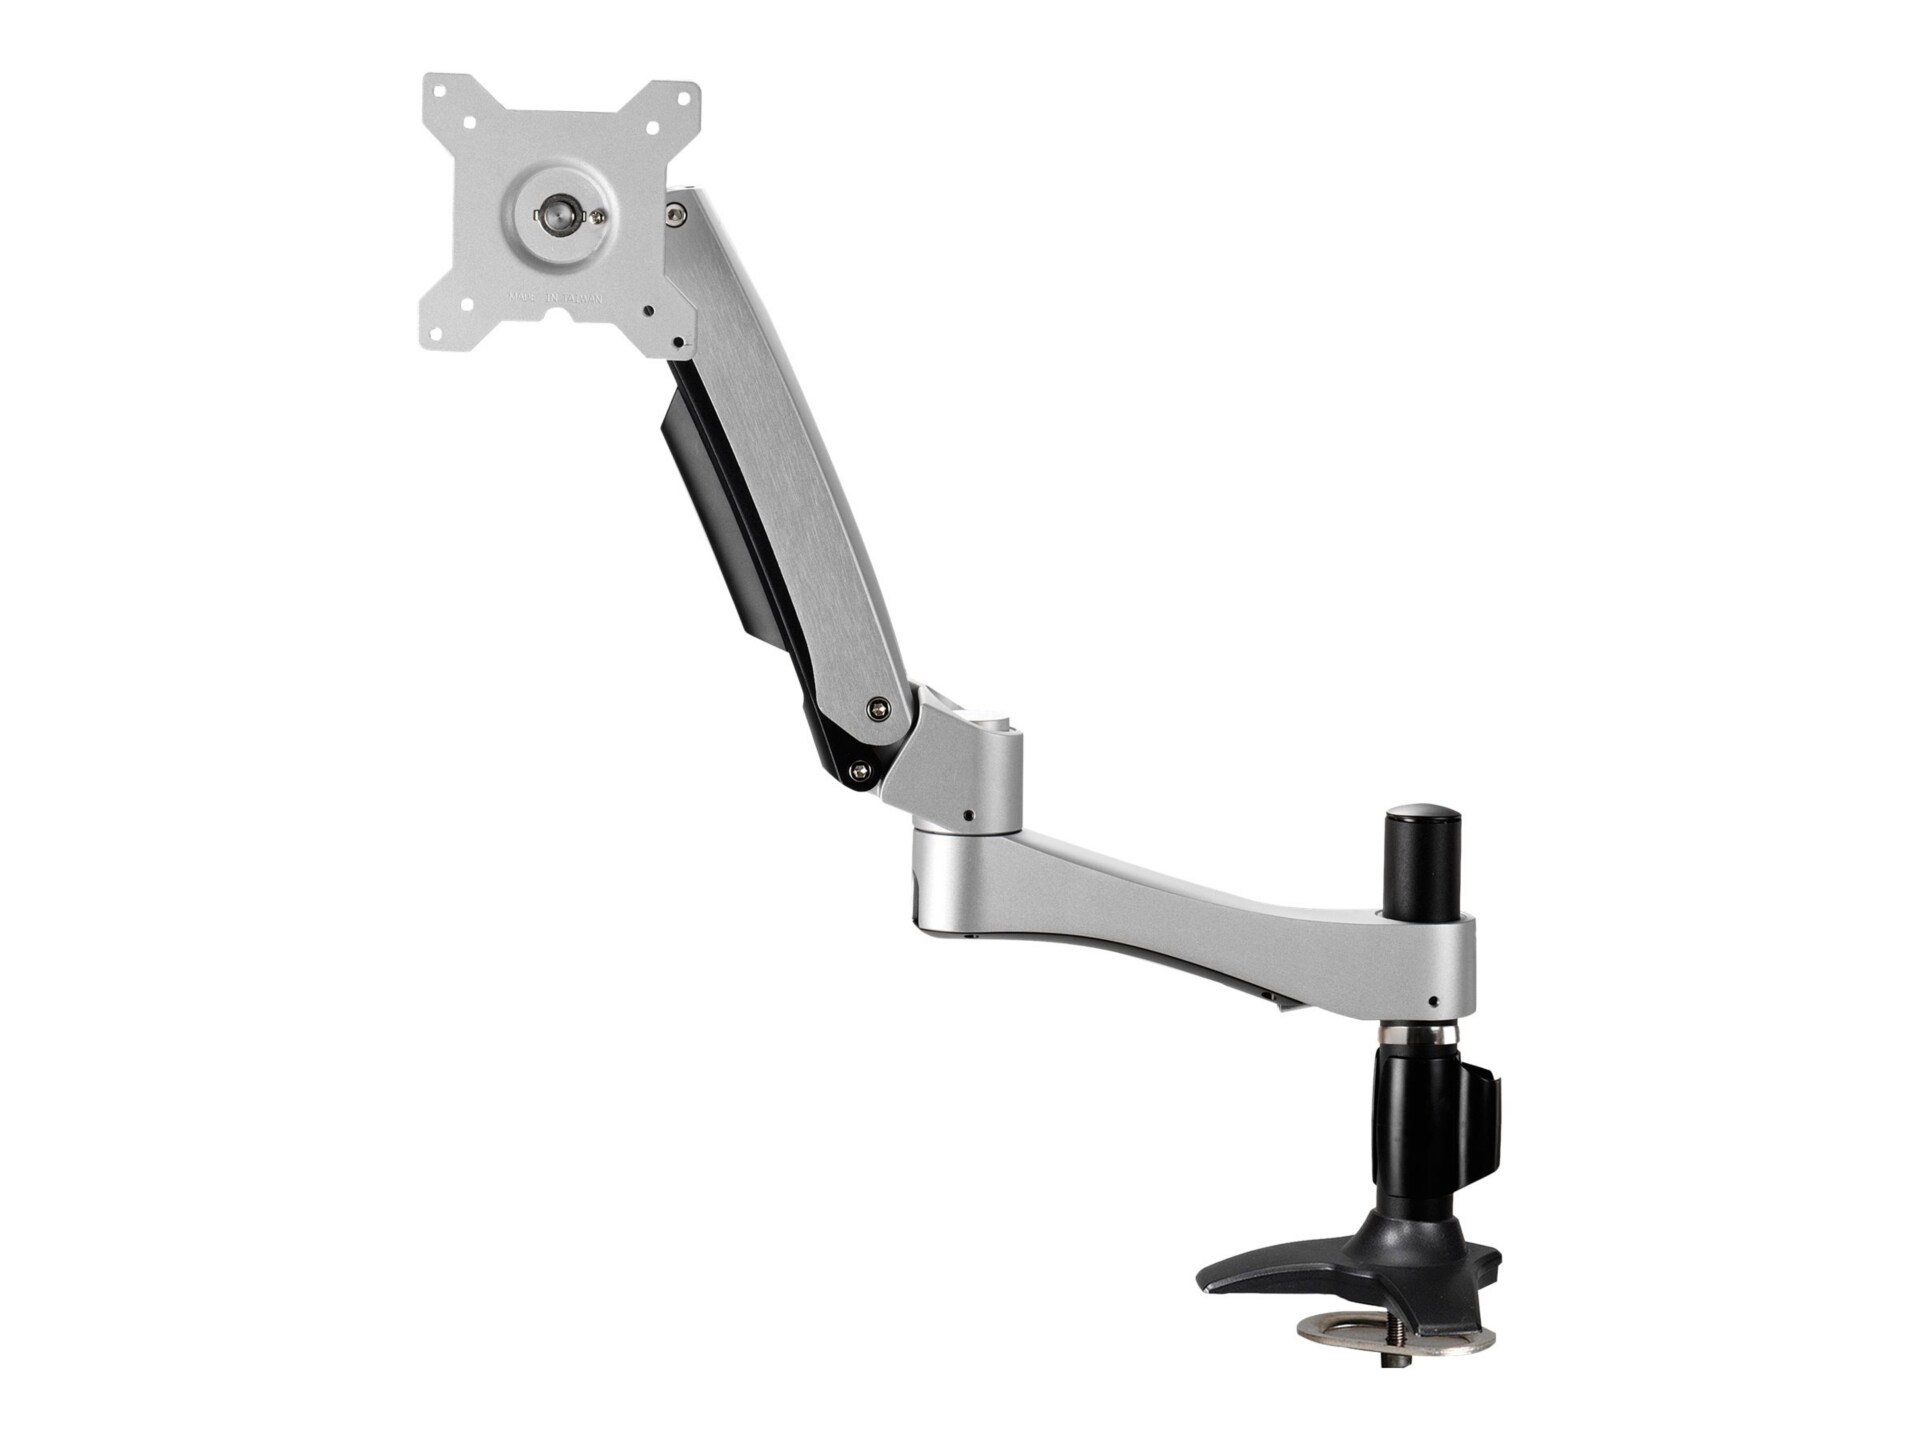 BALT HG Flat Panel Monitor Clamp Arm - mounting kit